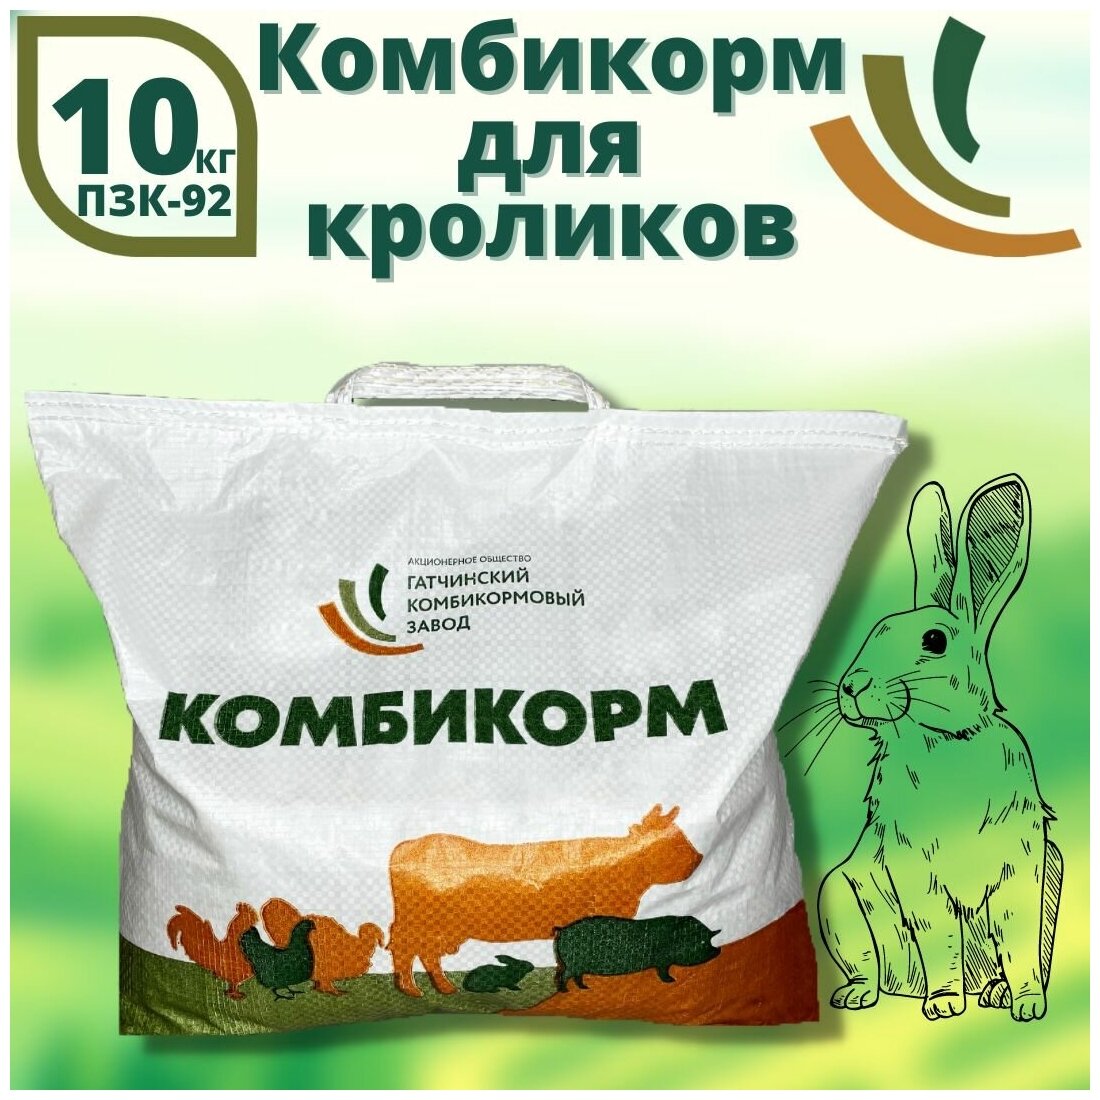 Полнорационный комбикорм для кроликов - ПЗК92, 10 кг